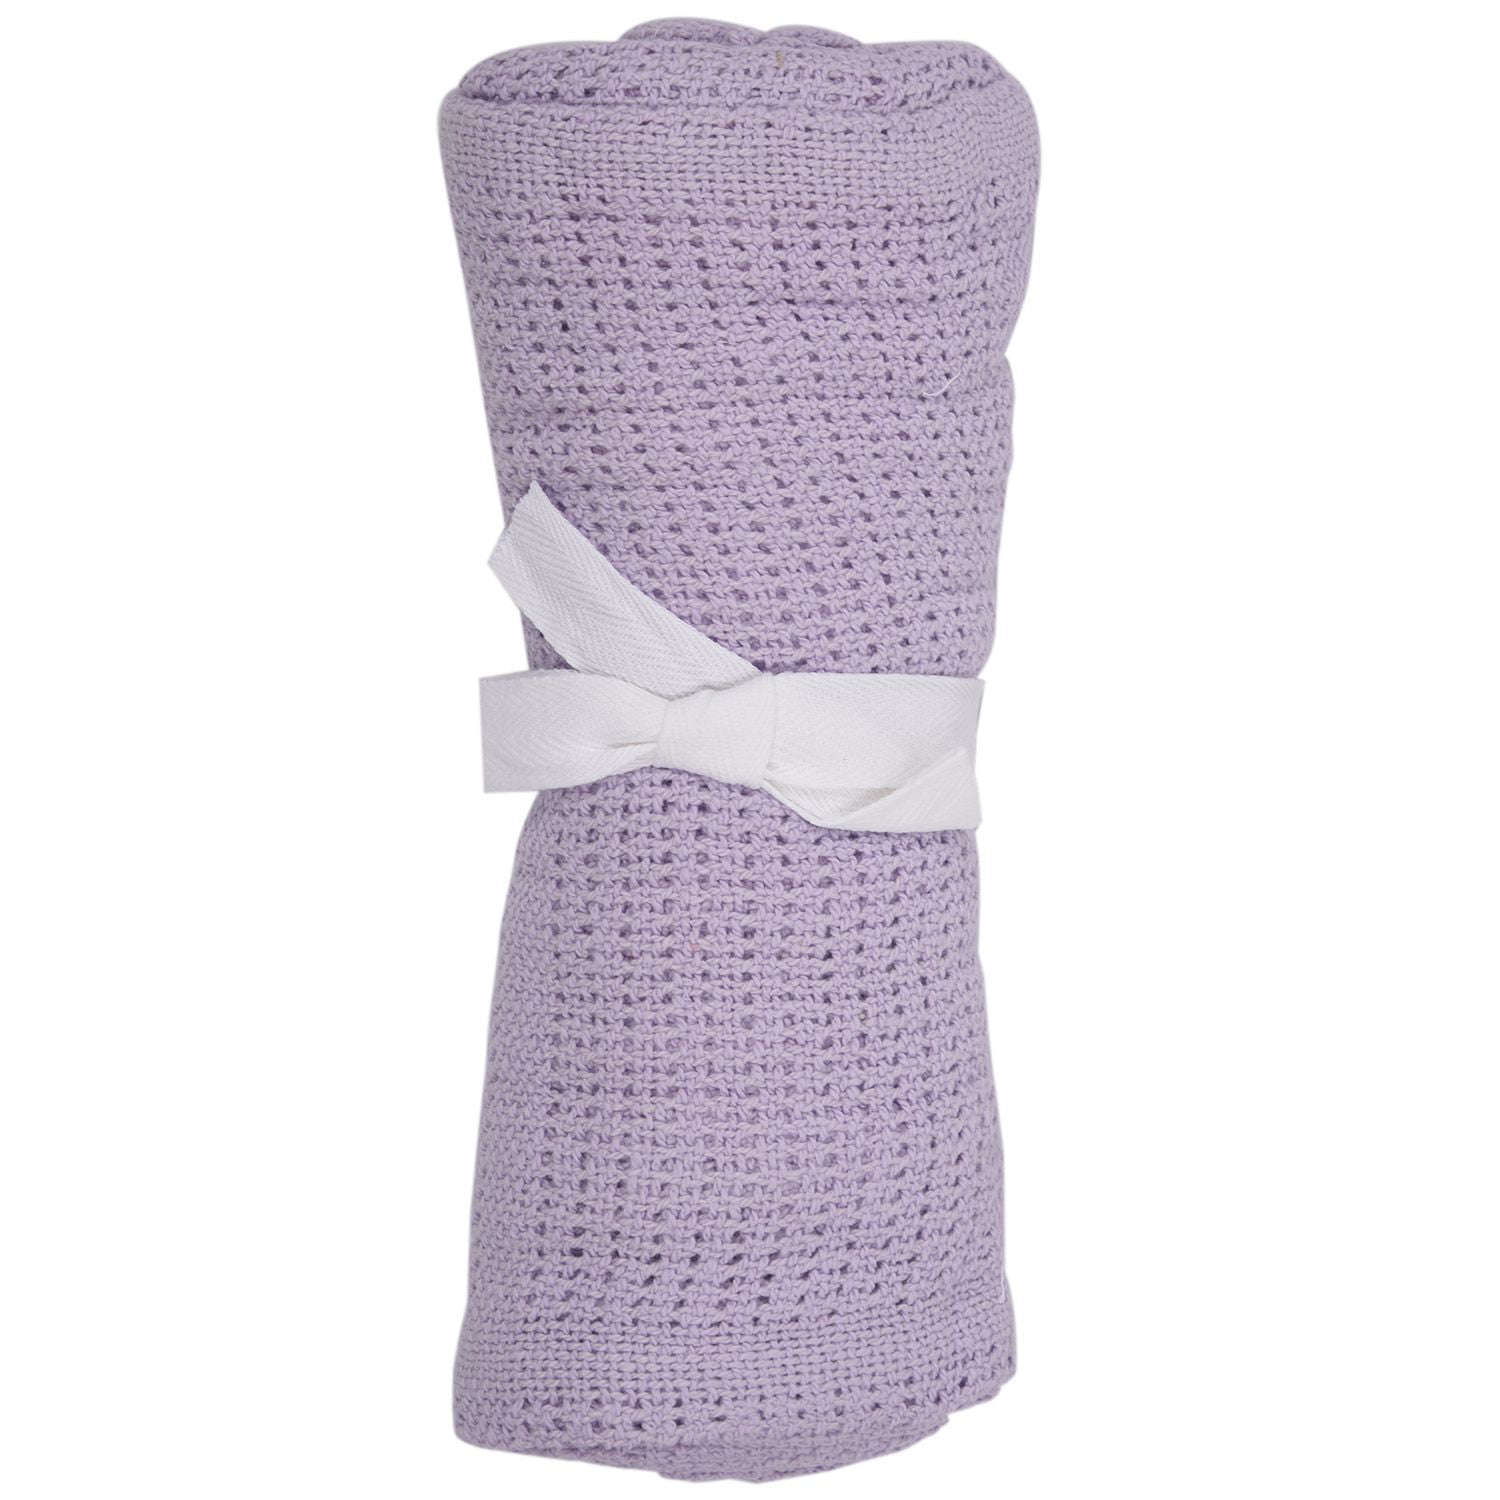 Fashion Cotton Baby Infant Cellular Soft Blanket Pram Bed Basket Crib Blanket 